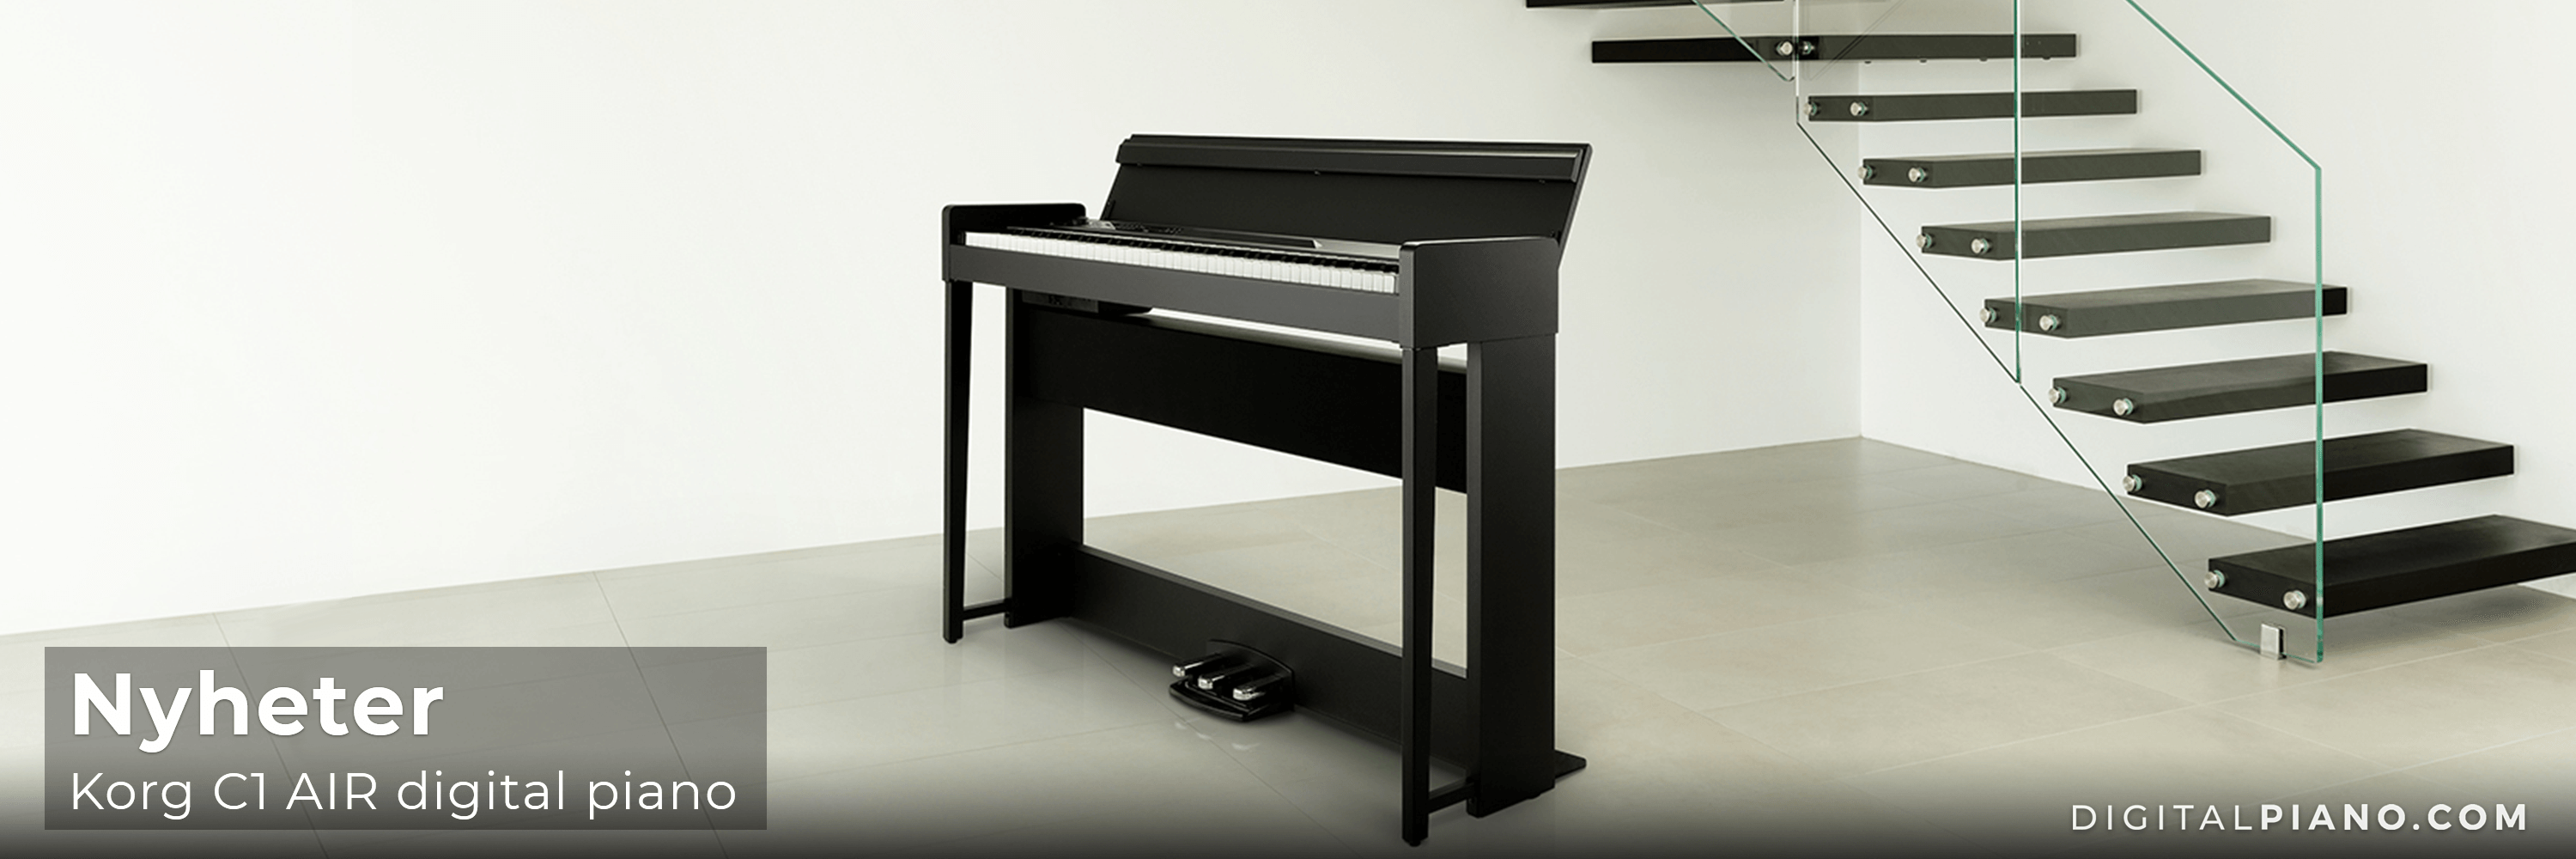 Korg C1 AIR Digital Piano